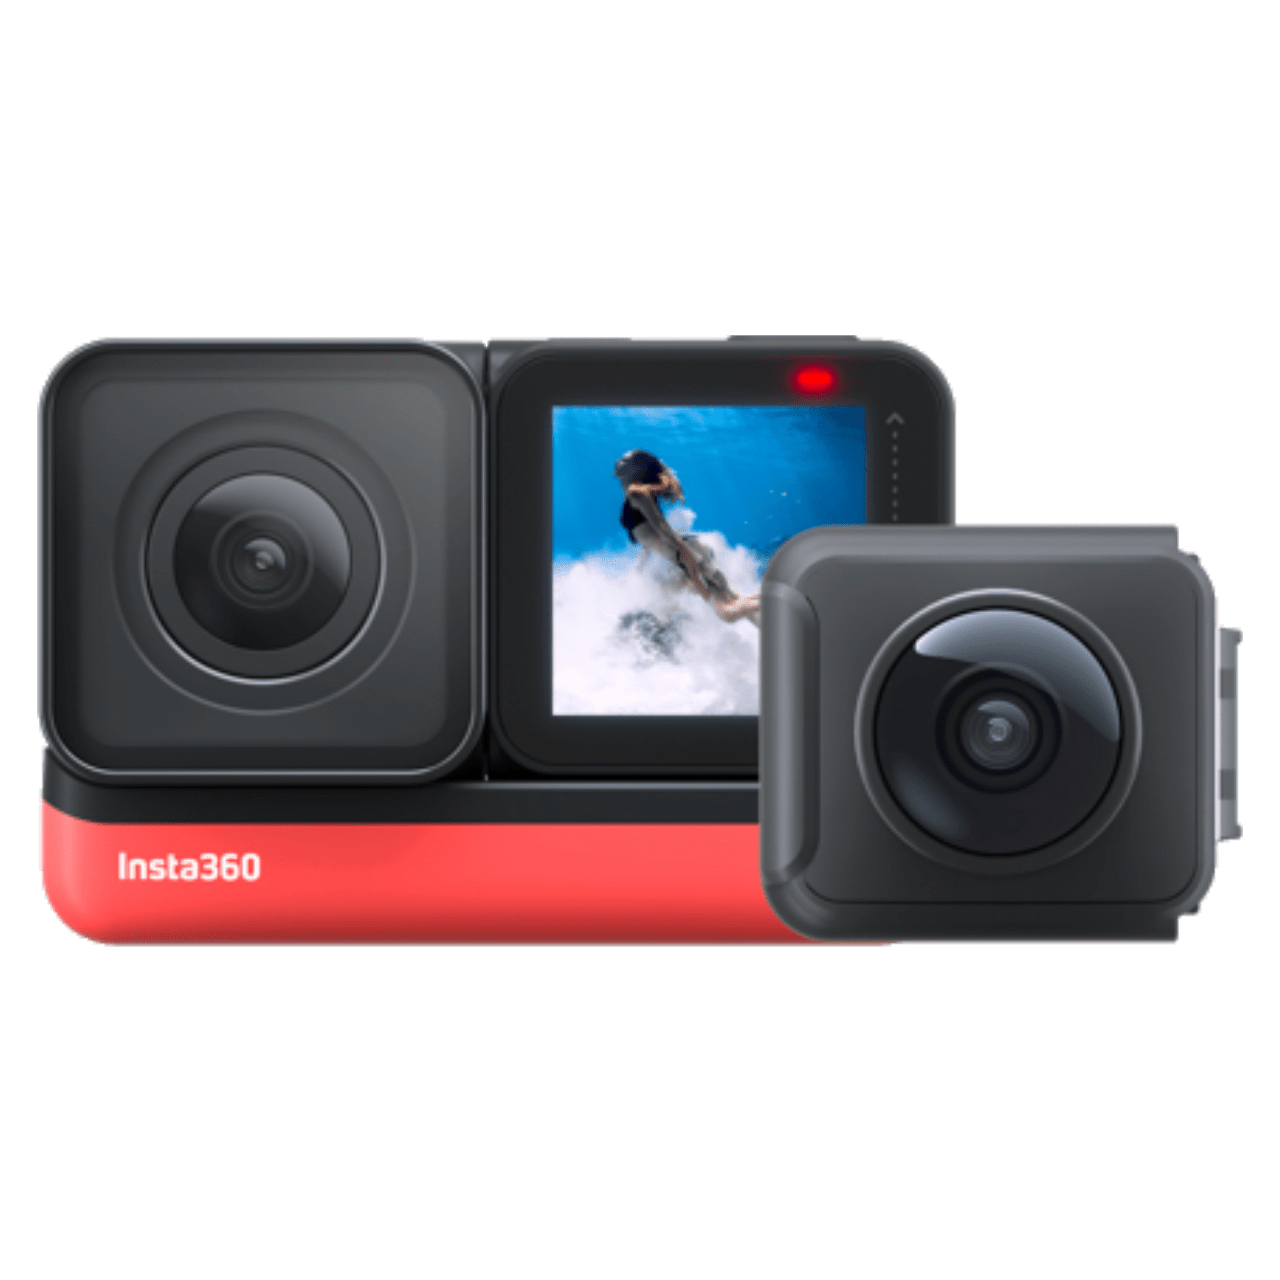 Caméras 360° - Actualités, Tests et Comparatifs - Les Numériques